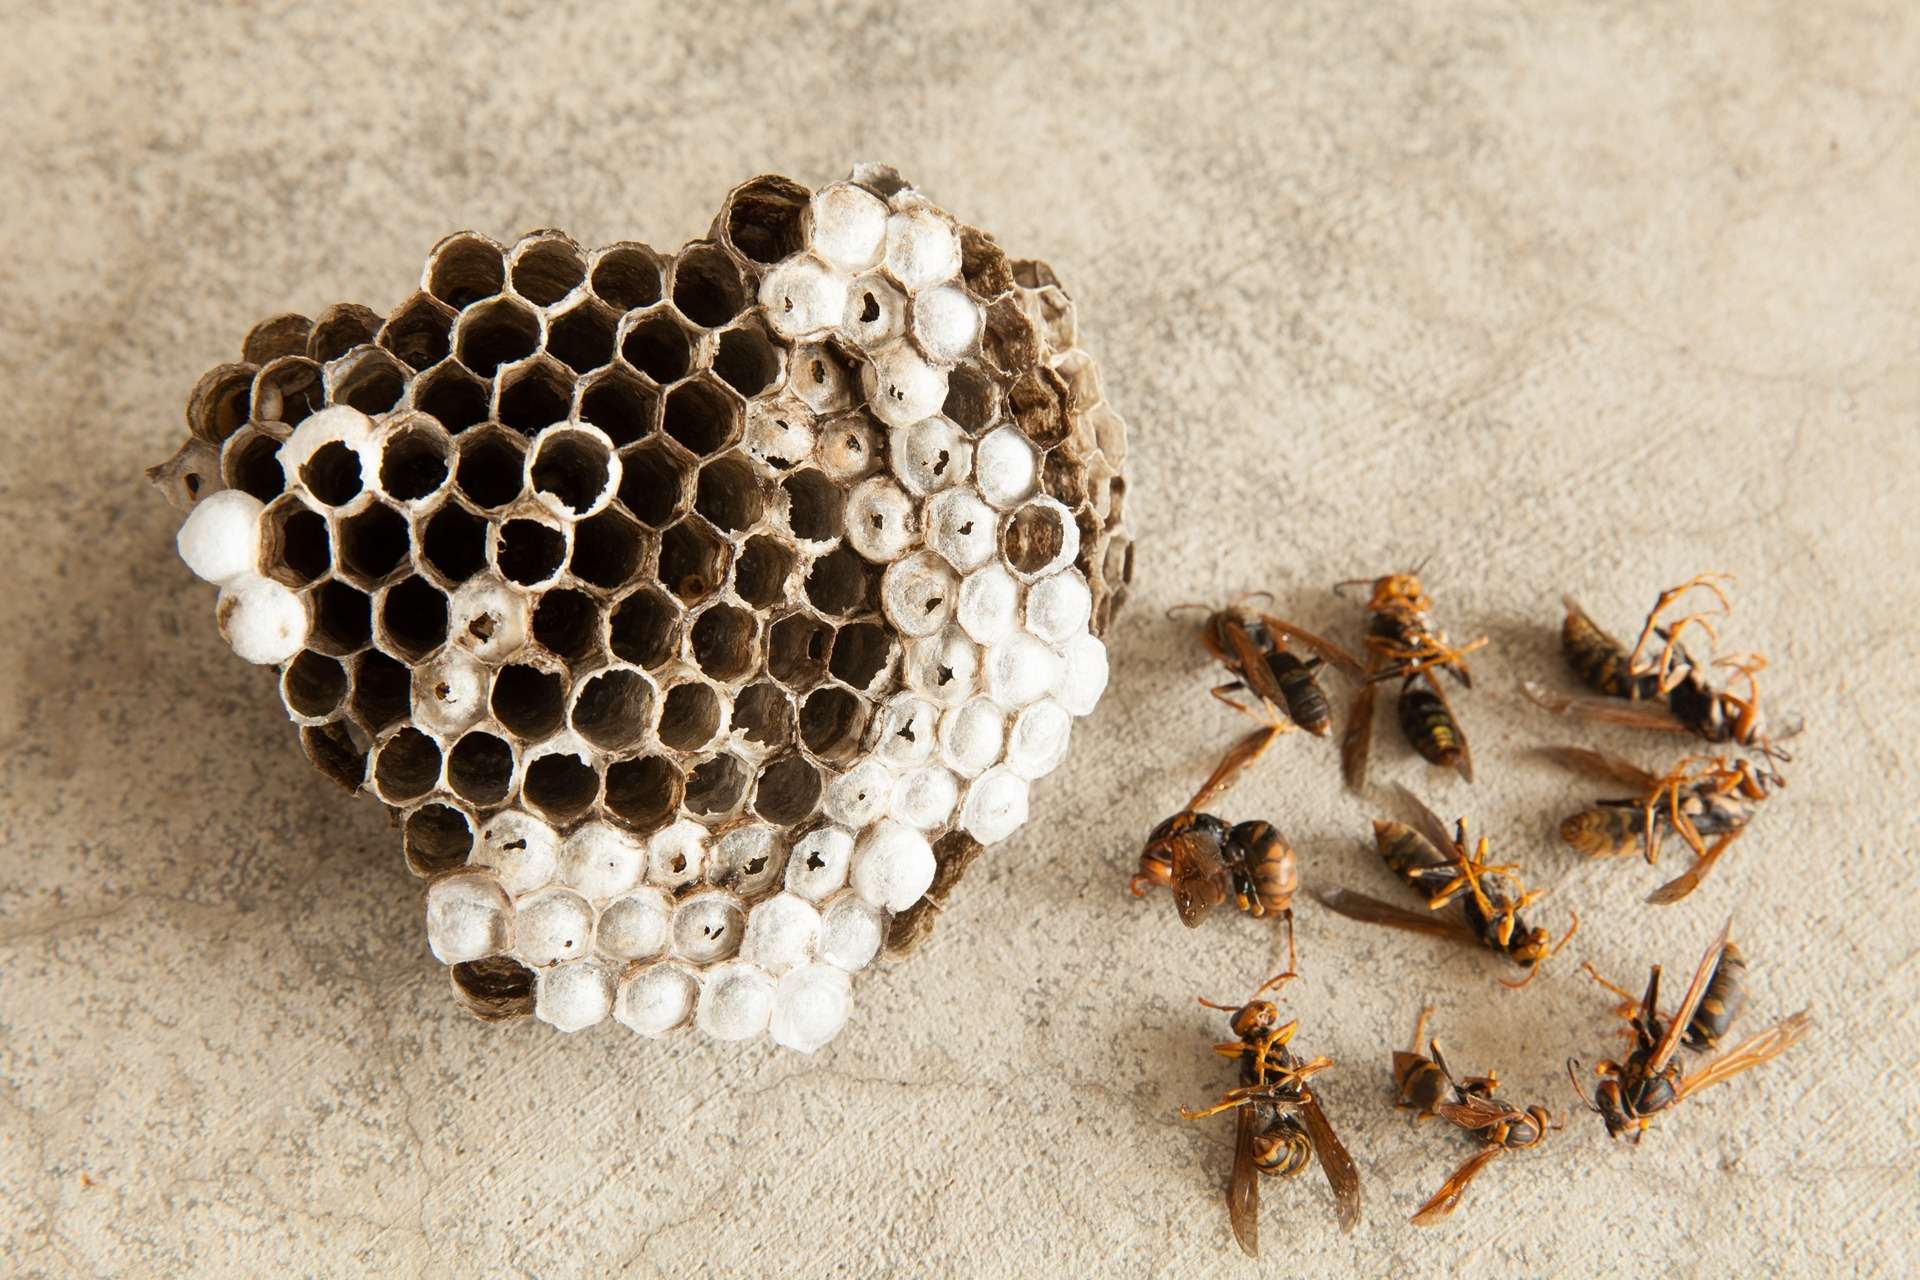 蜂は大きな健康被害をもたらす虫として知られております